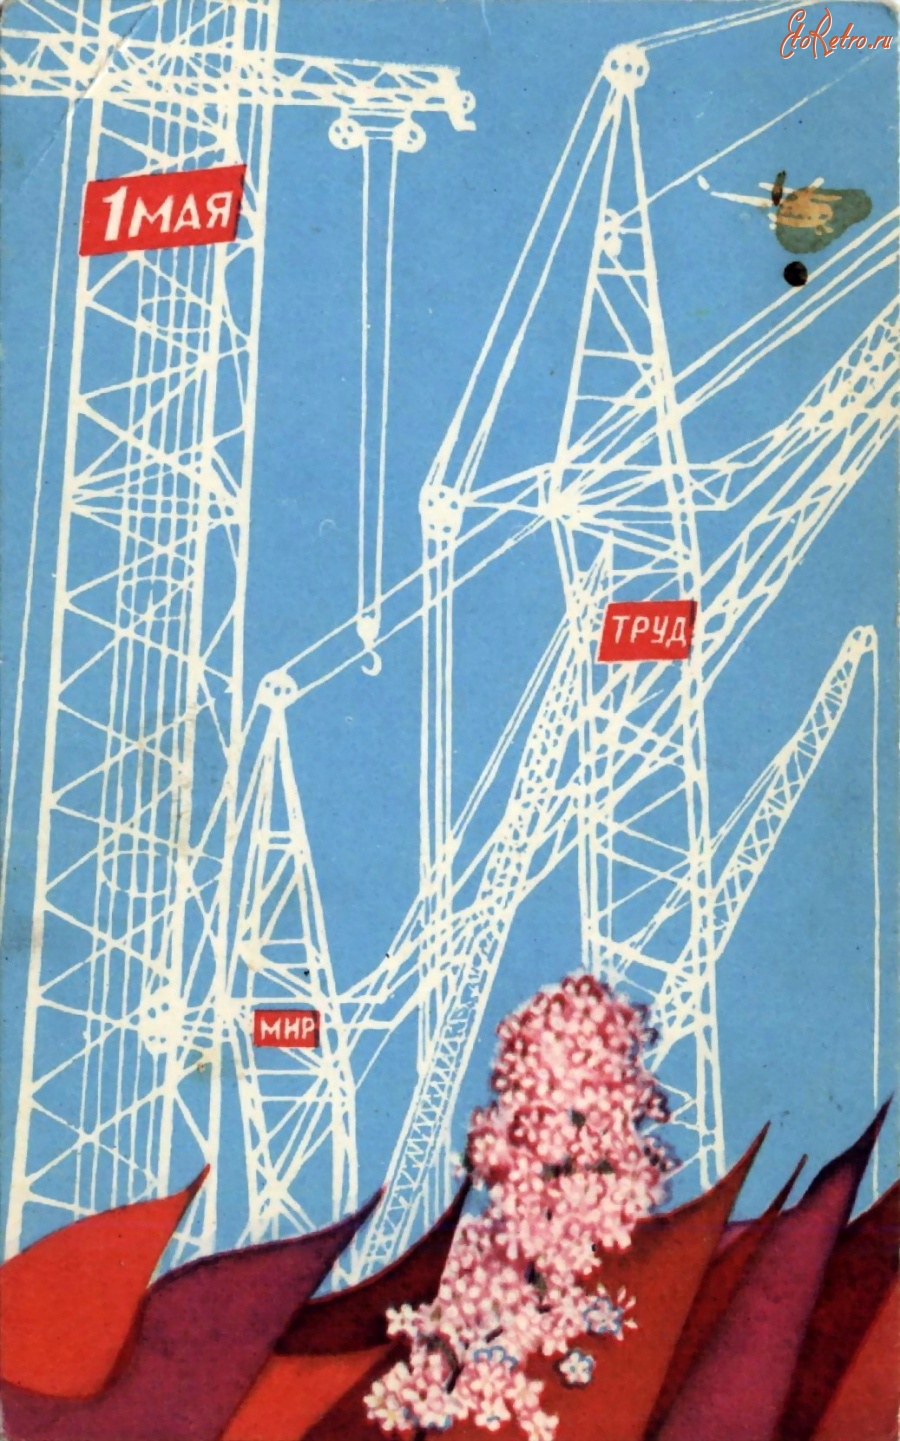 1 мая строительство. Мир труд май советские открытки. 1 Мая советские открытки стройка. Советские открытки с 1 мая. Открытки с первым мая советские.